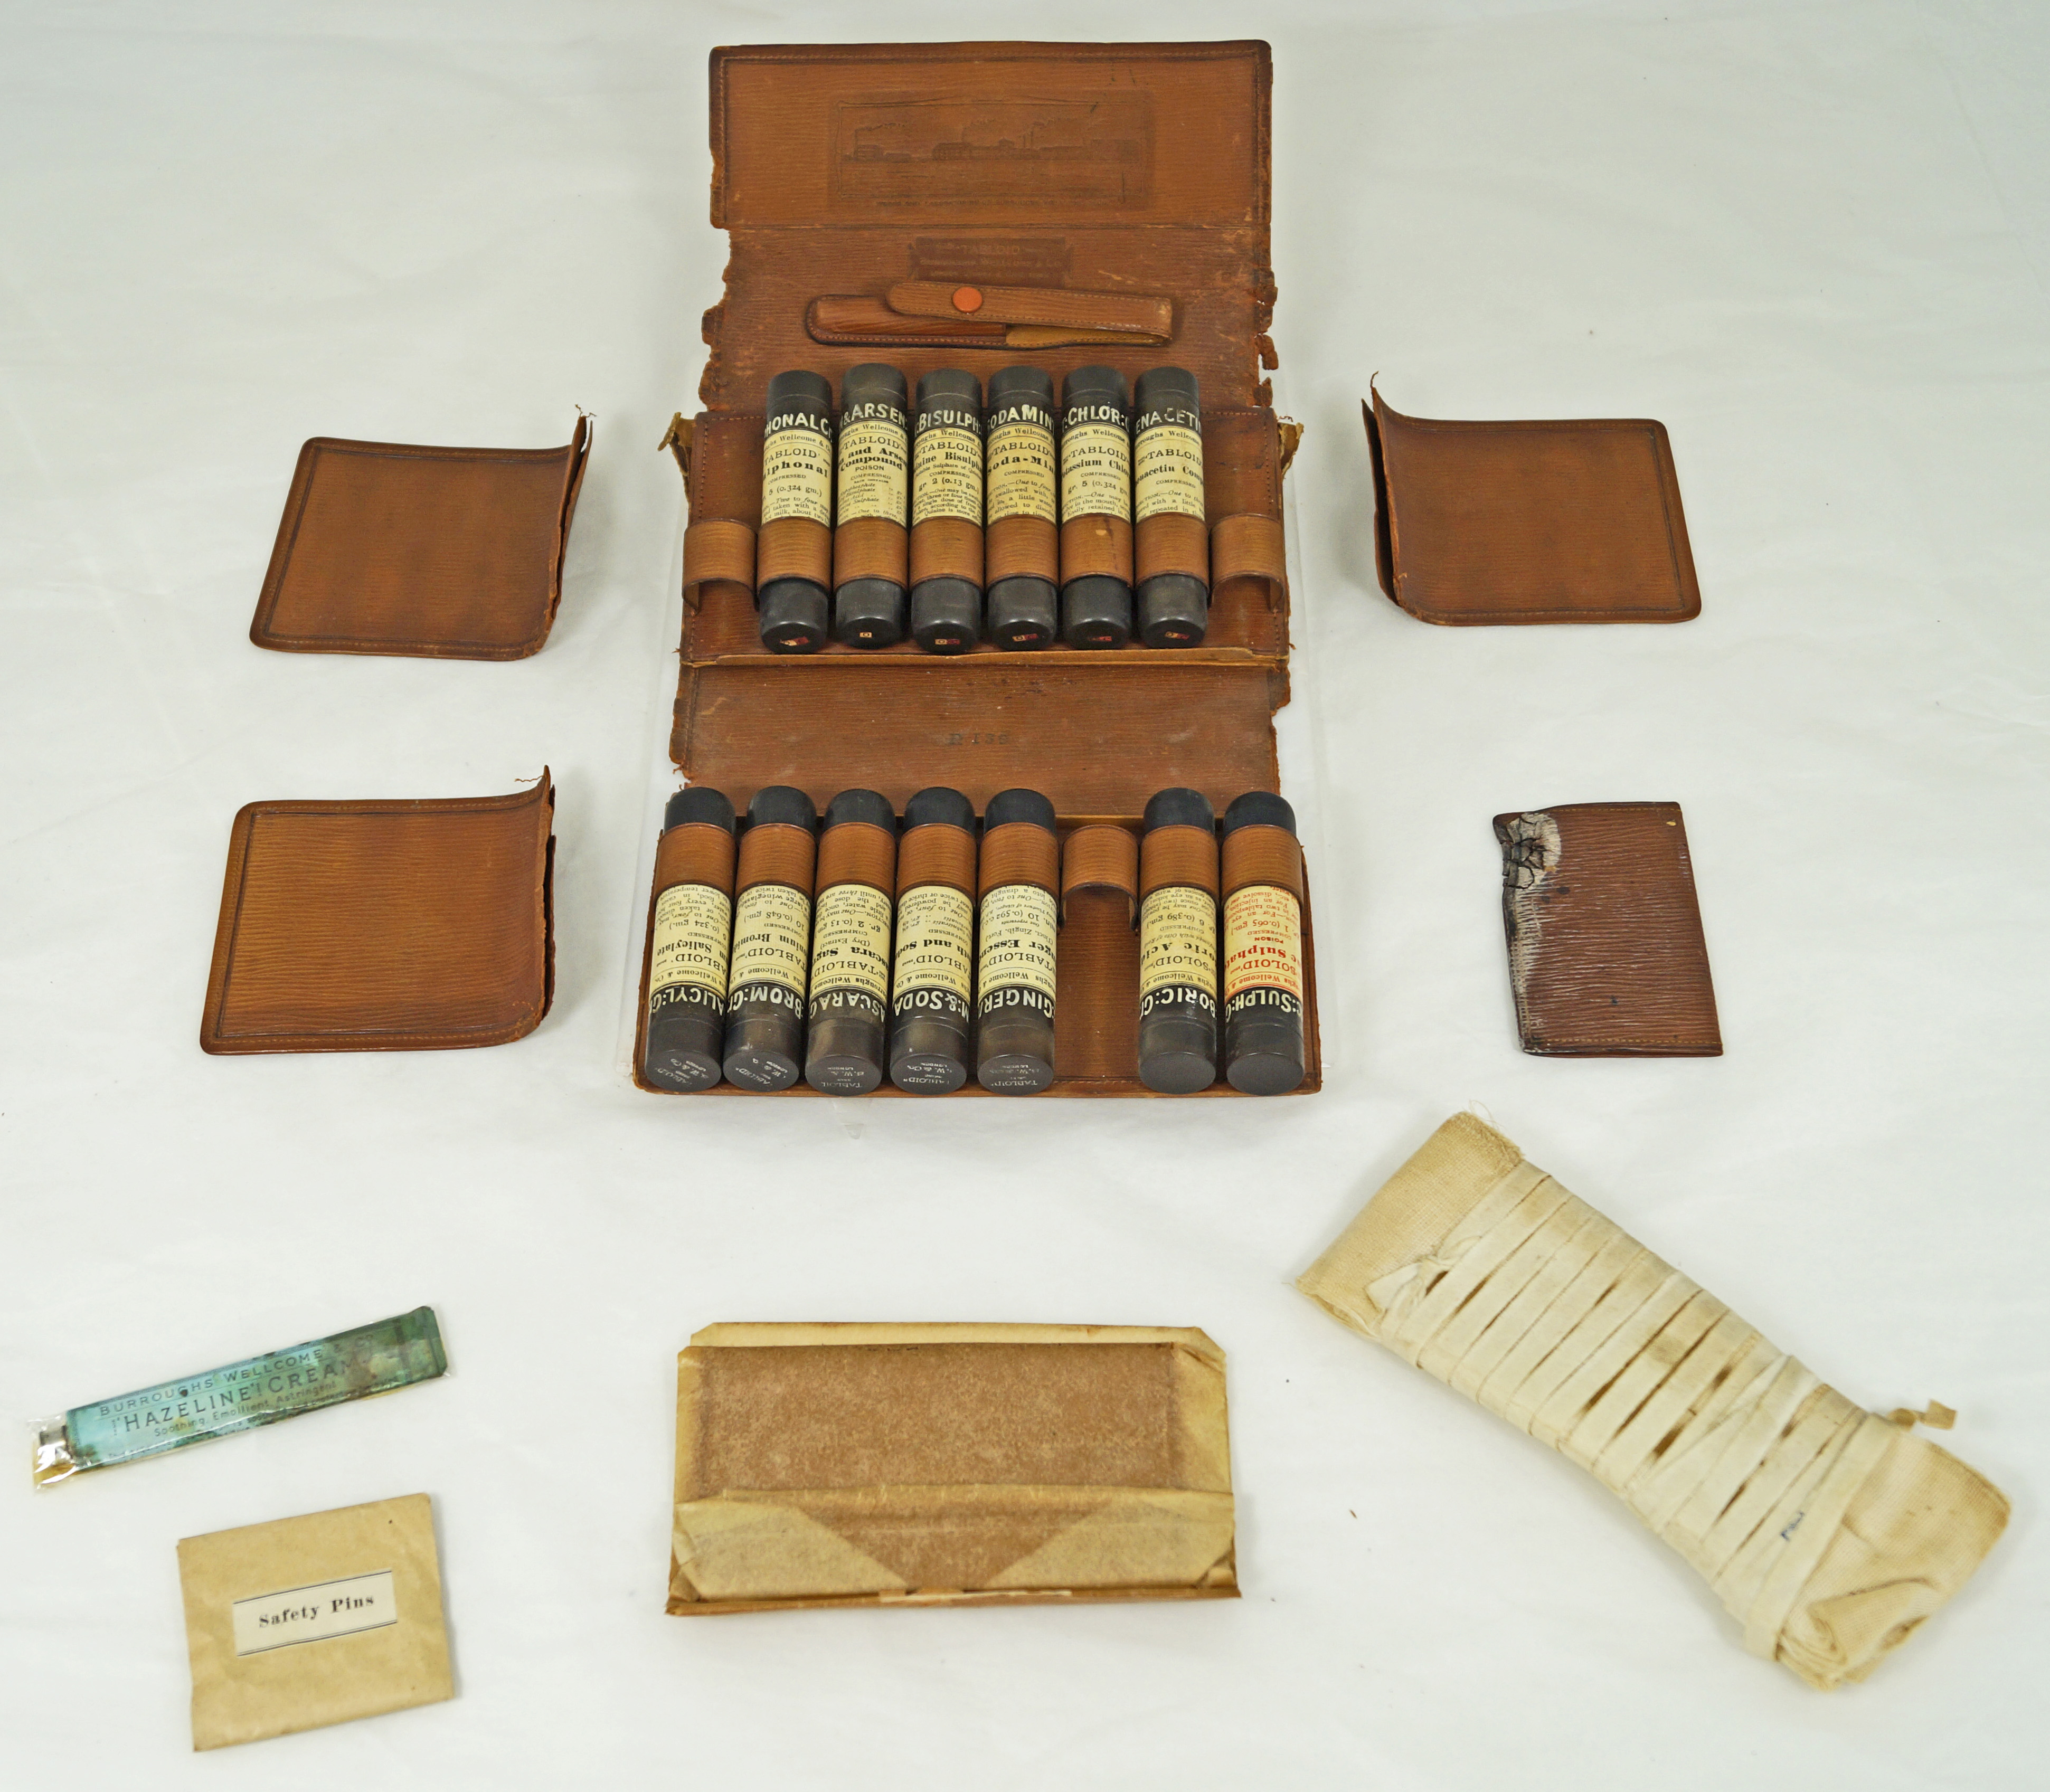 Ernest Shackleton's medical kit before conservation